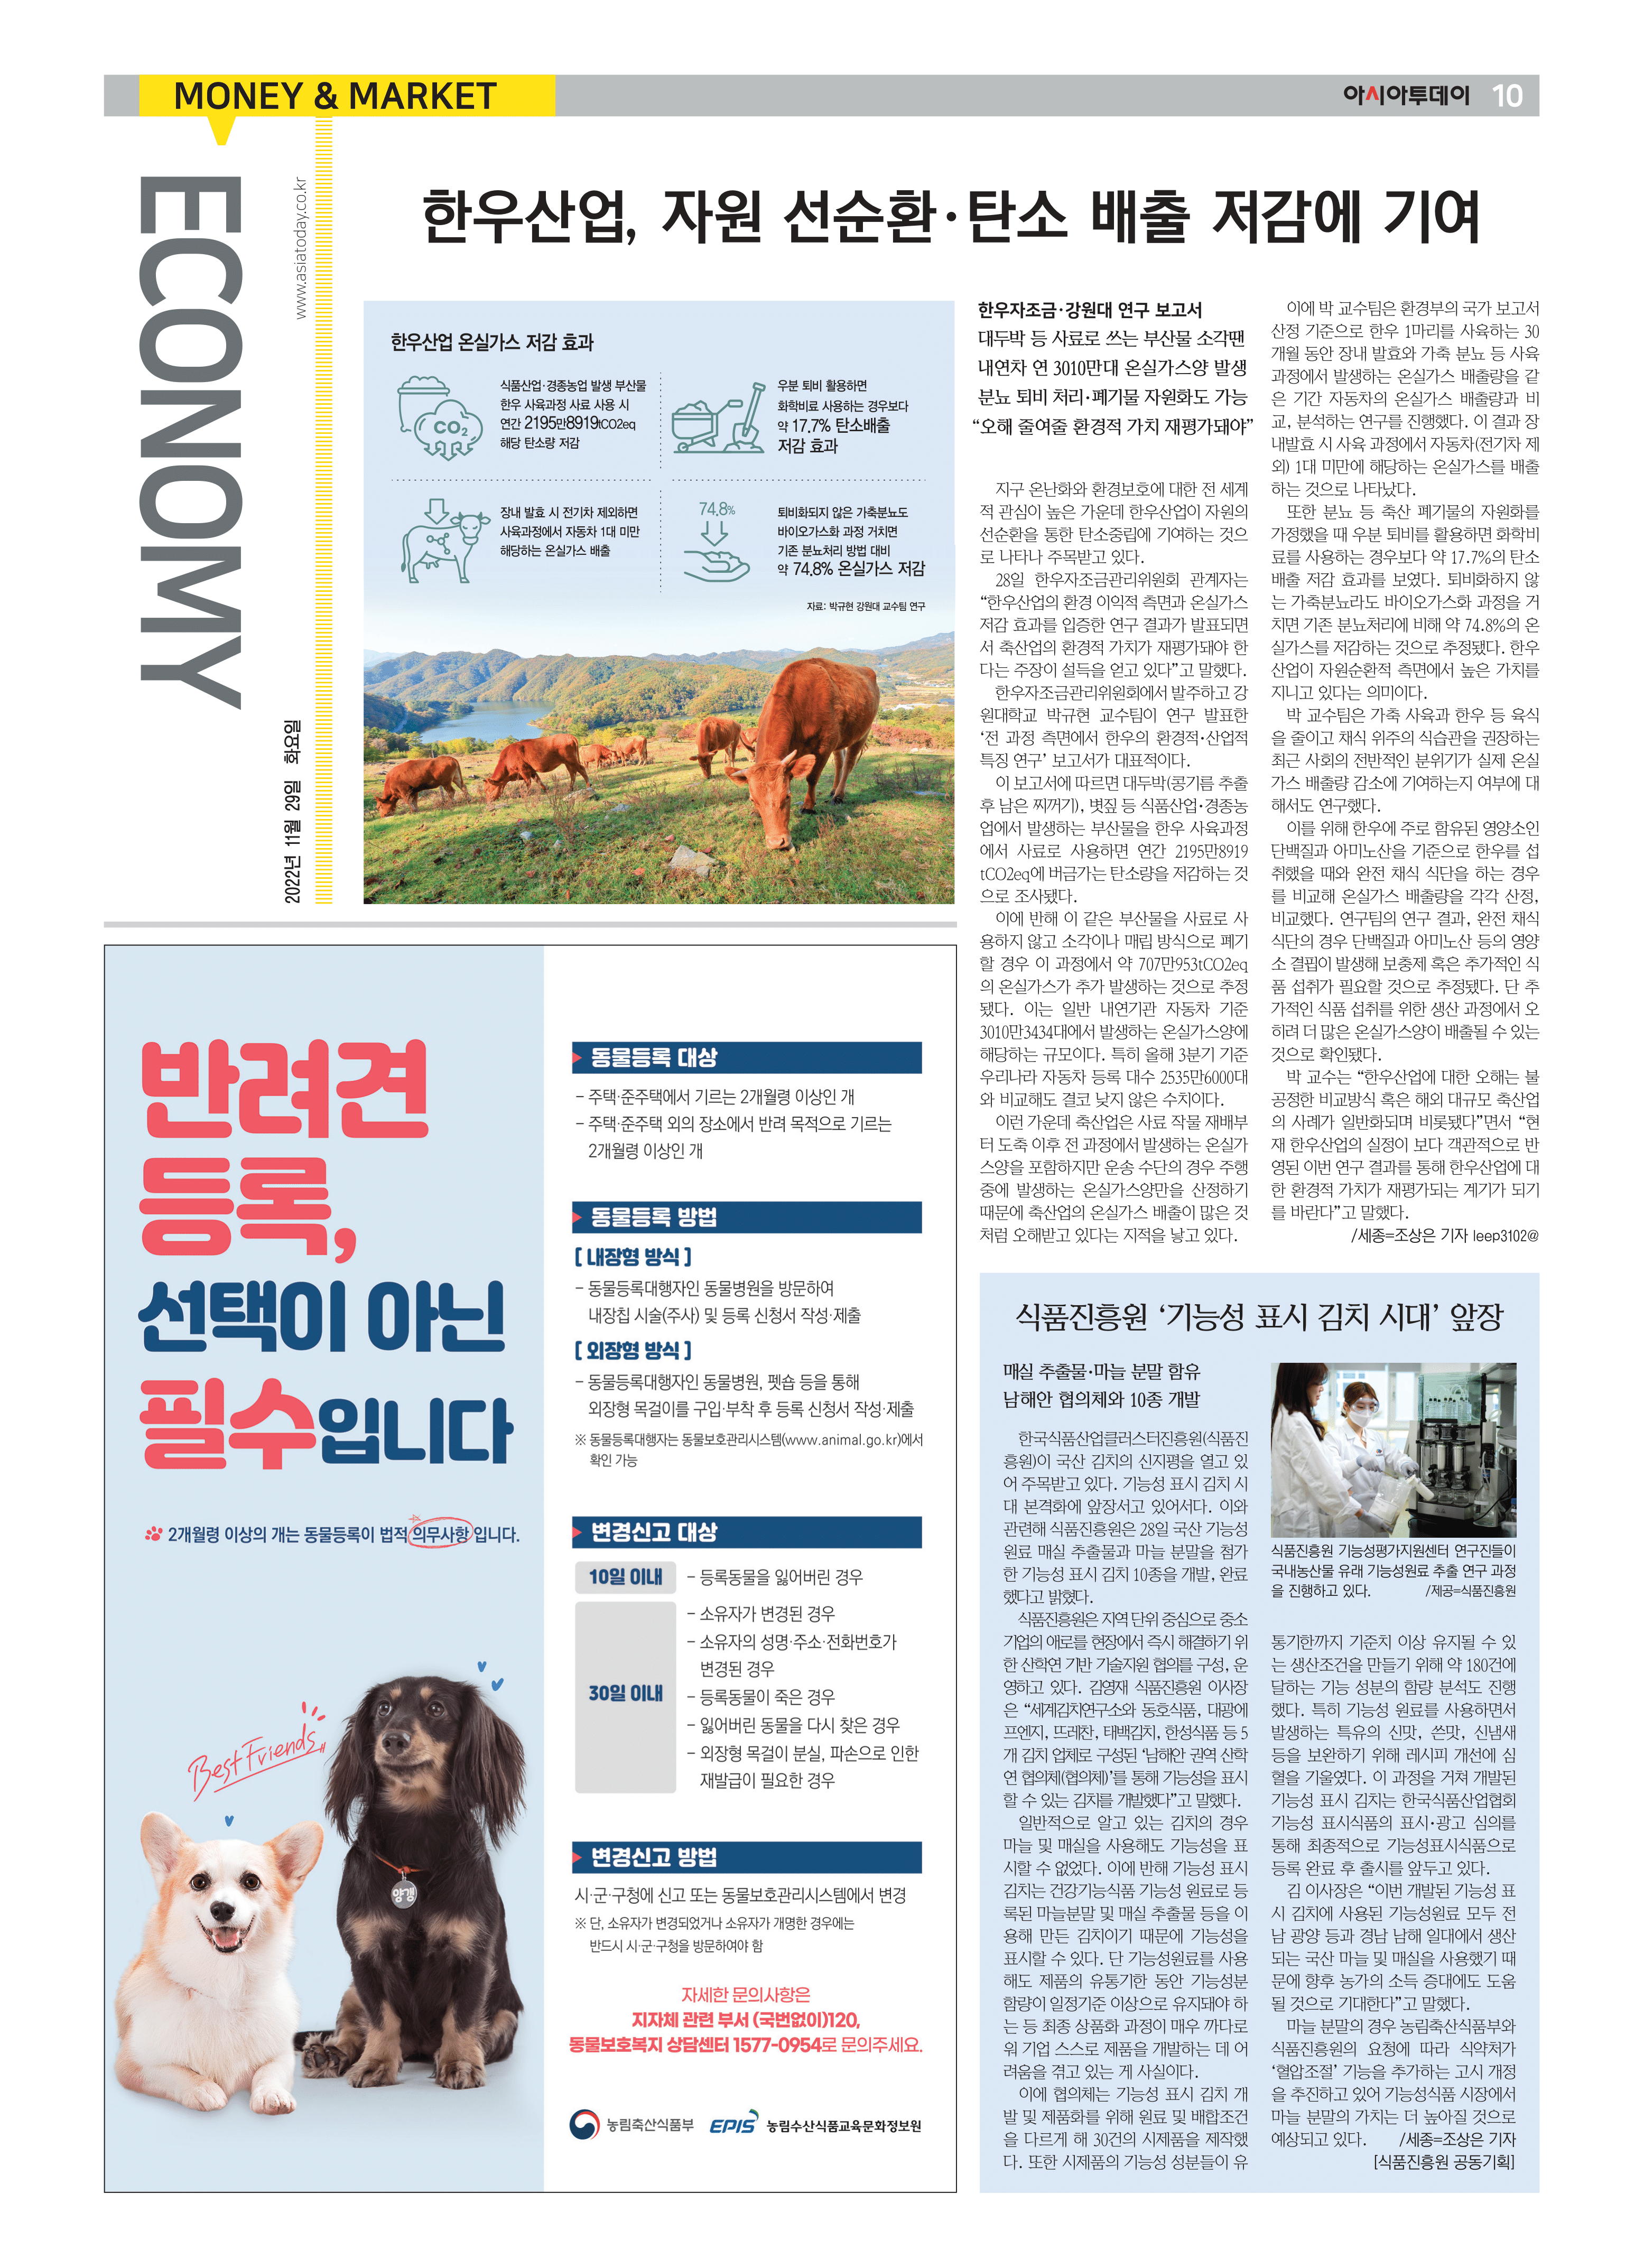 (11.29) 식품진흥원, ‘기능성 표시 김치 시대’ 앞장(아시아투데이)_1